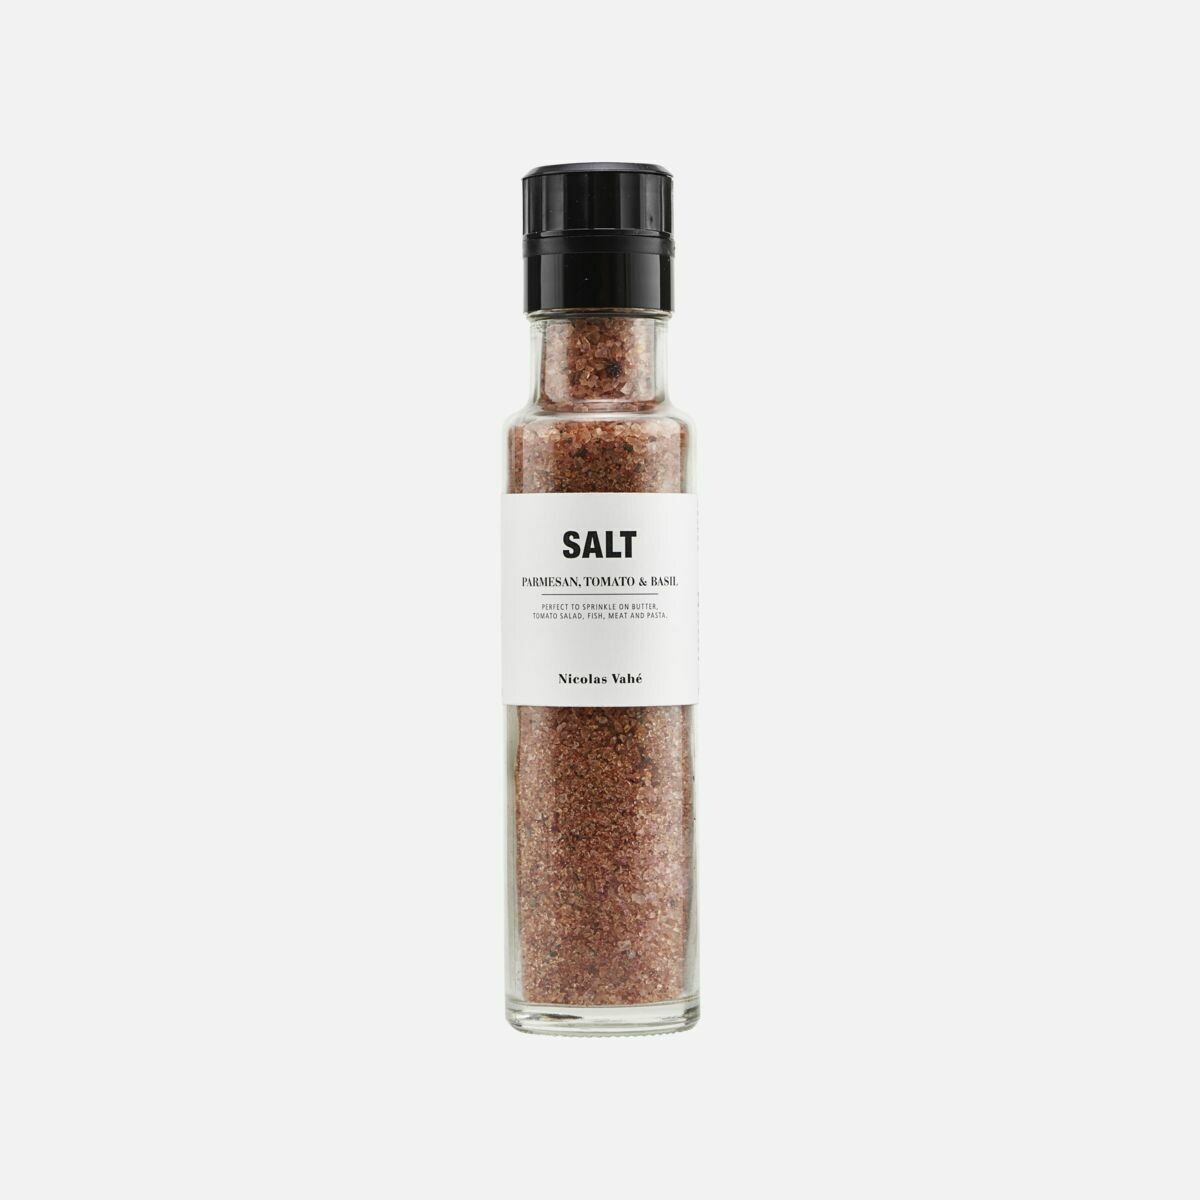 Salt, Parmesan, Tomato & Basil, 300g